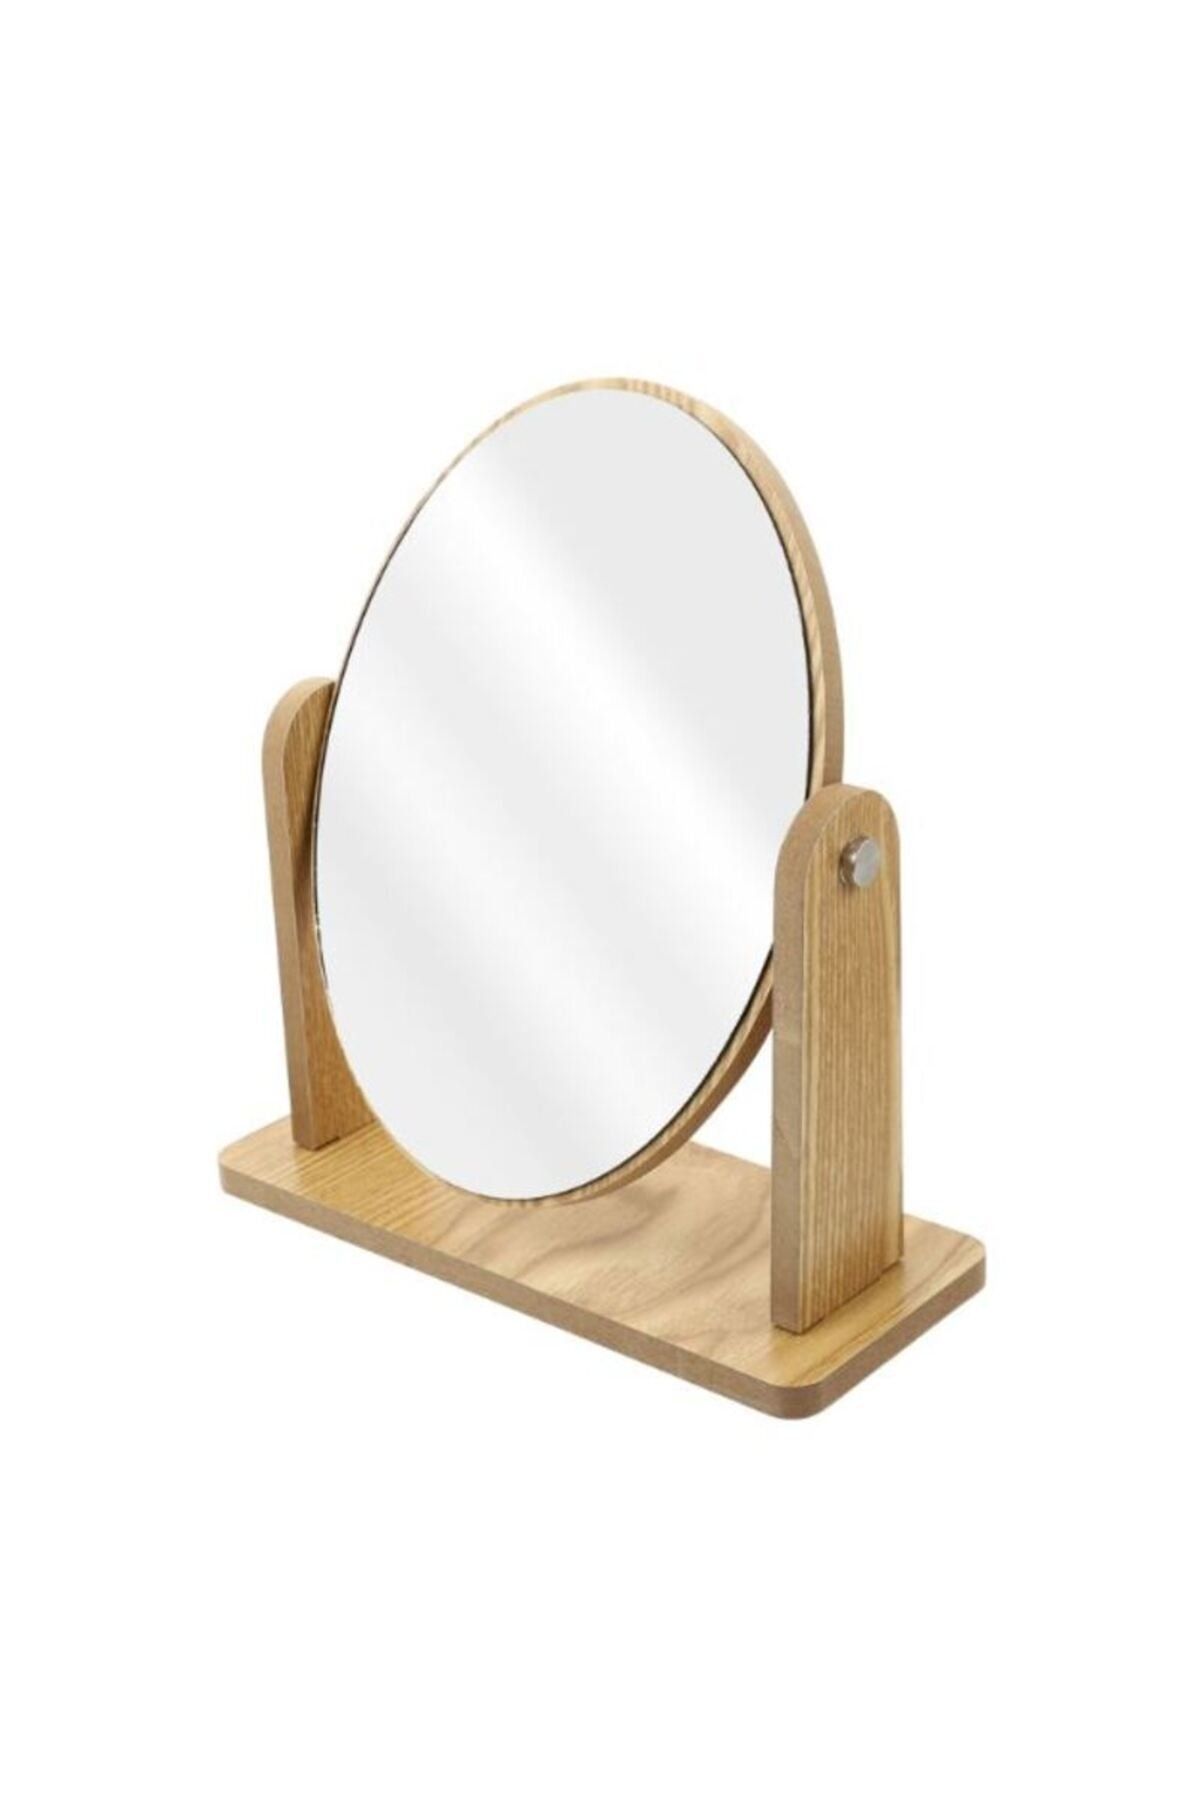 gaman Masaüstü Oval Ayna Ayarlanabilir Makyaj Aynası Masaüstü Ahşap Ayna Özel Tasarımlı Ahşap Retro